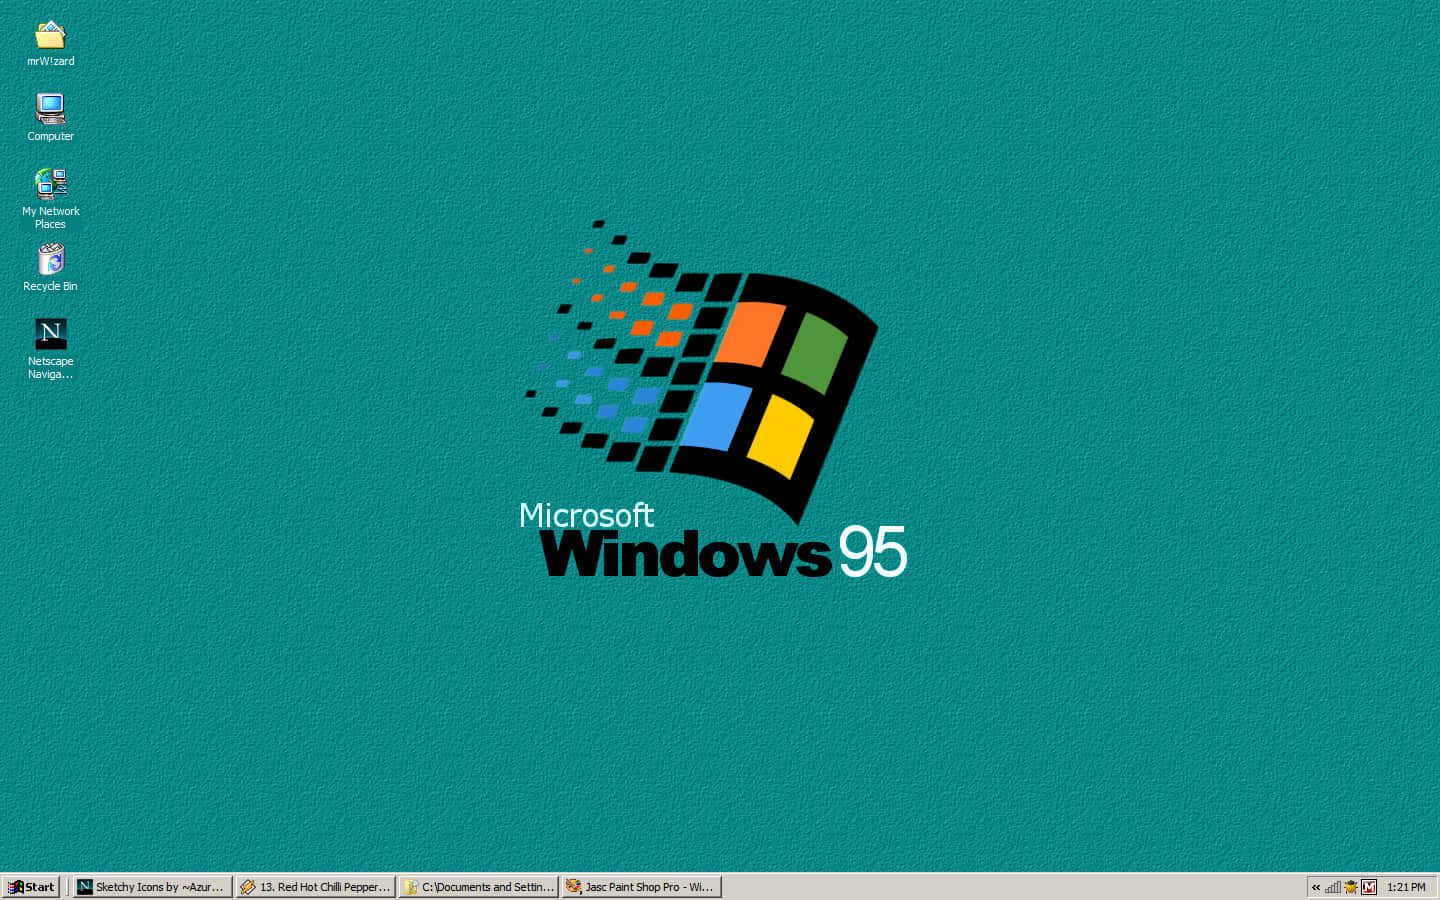 Omfavnteknologisk Fremskridt Med Udgivelsen Af Windows 95.